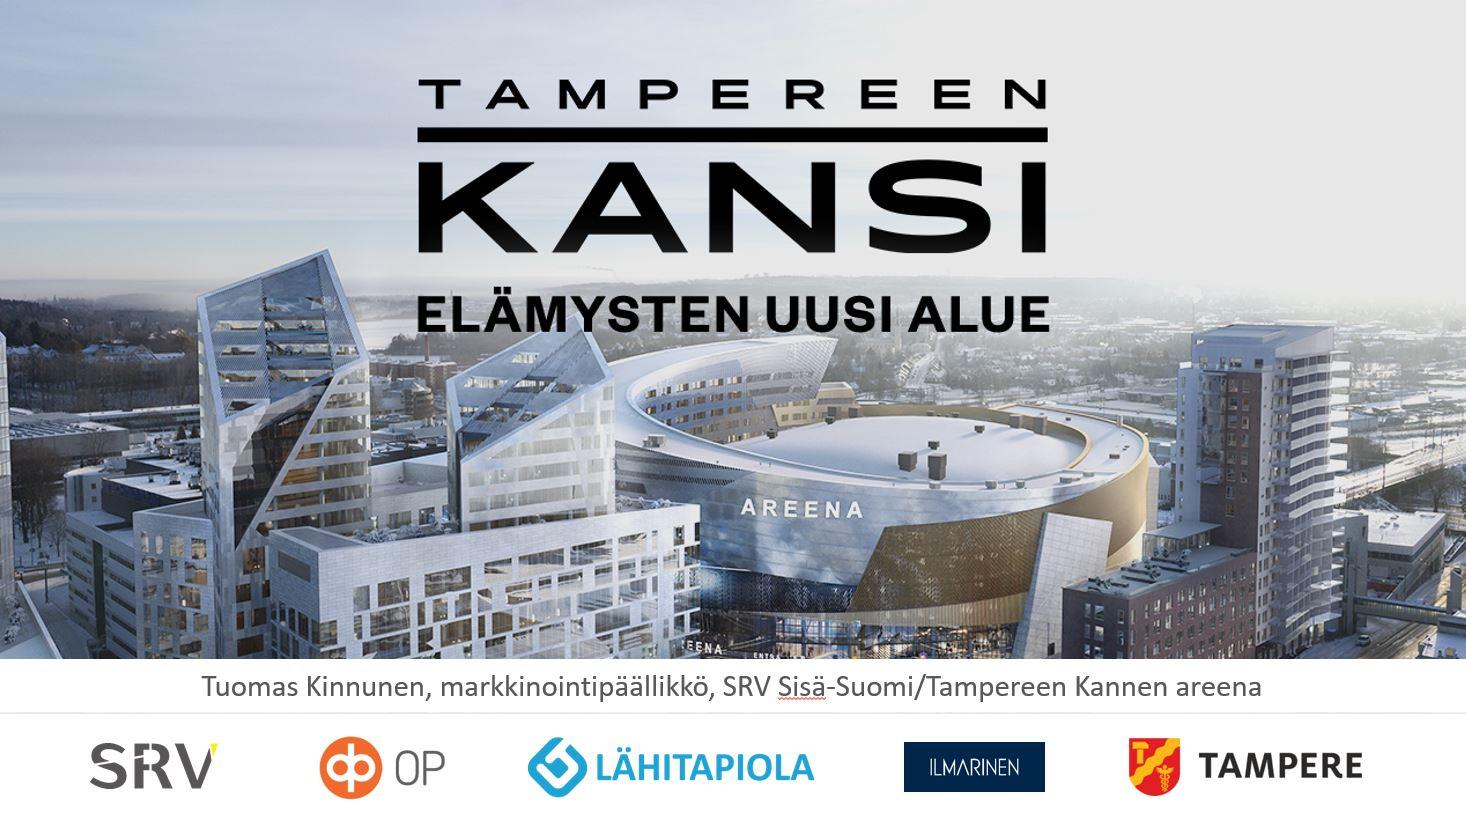 Tampereen Kansi ja Kannen uusi areena – missä mennään ja miten kokonaisuus etenee?